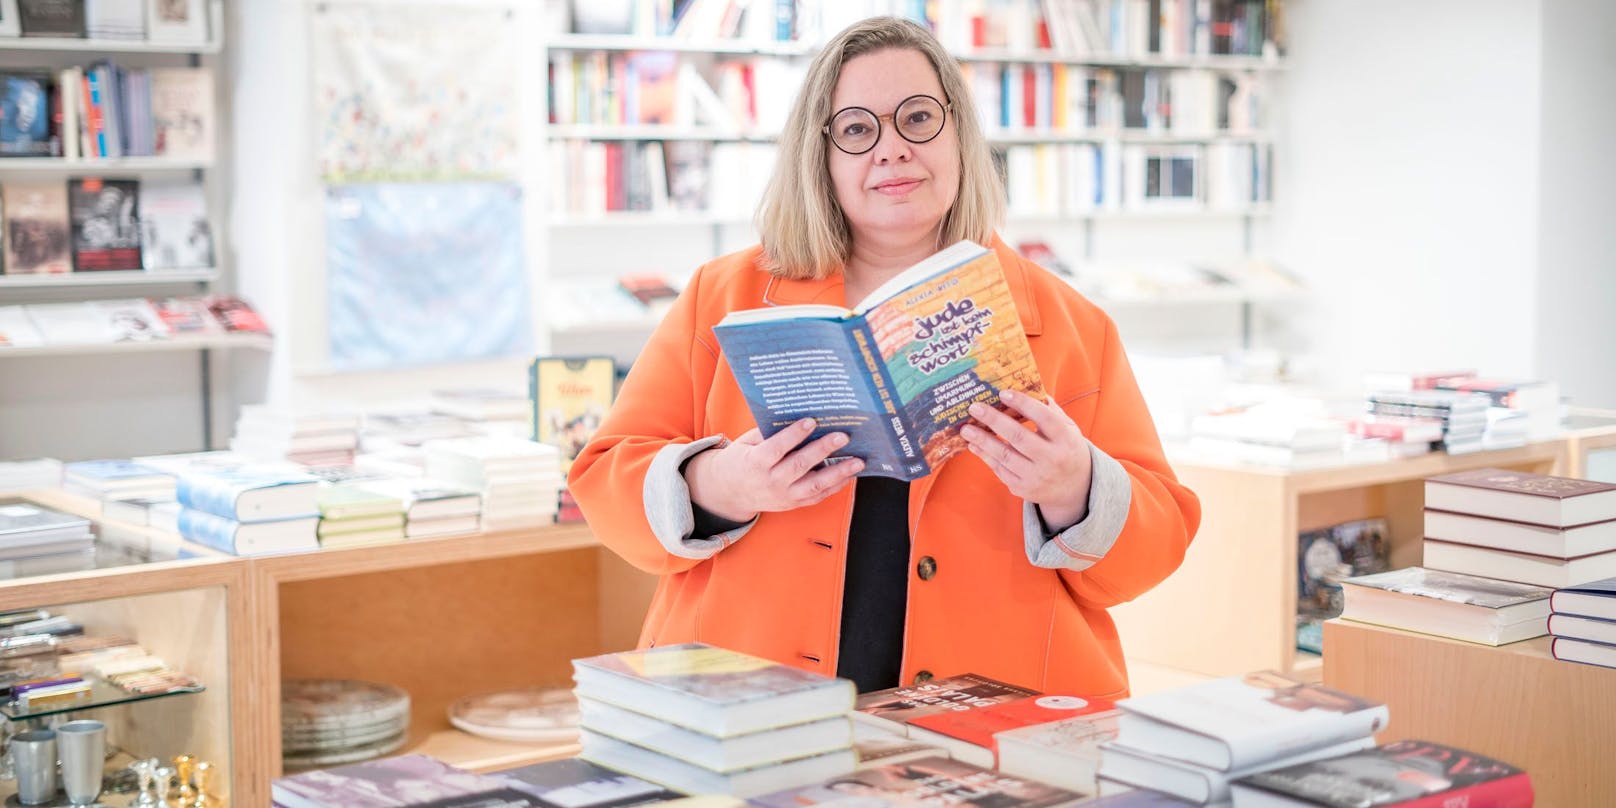 Schriftstellerin Alexia Weiss mit ihrem neuen Buch "Jude ist kein Schimpfwort" im "Bookshop Singer".